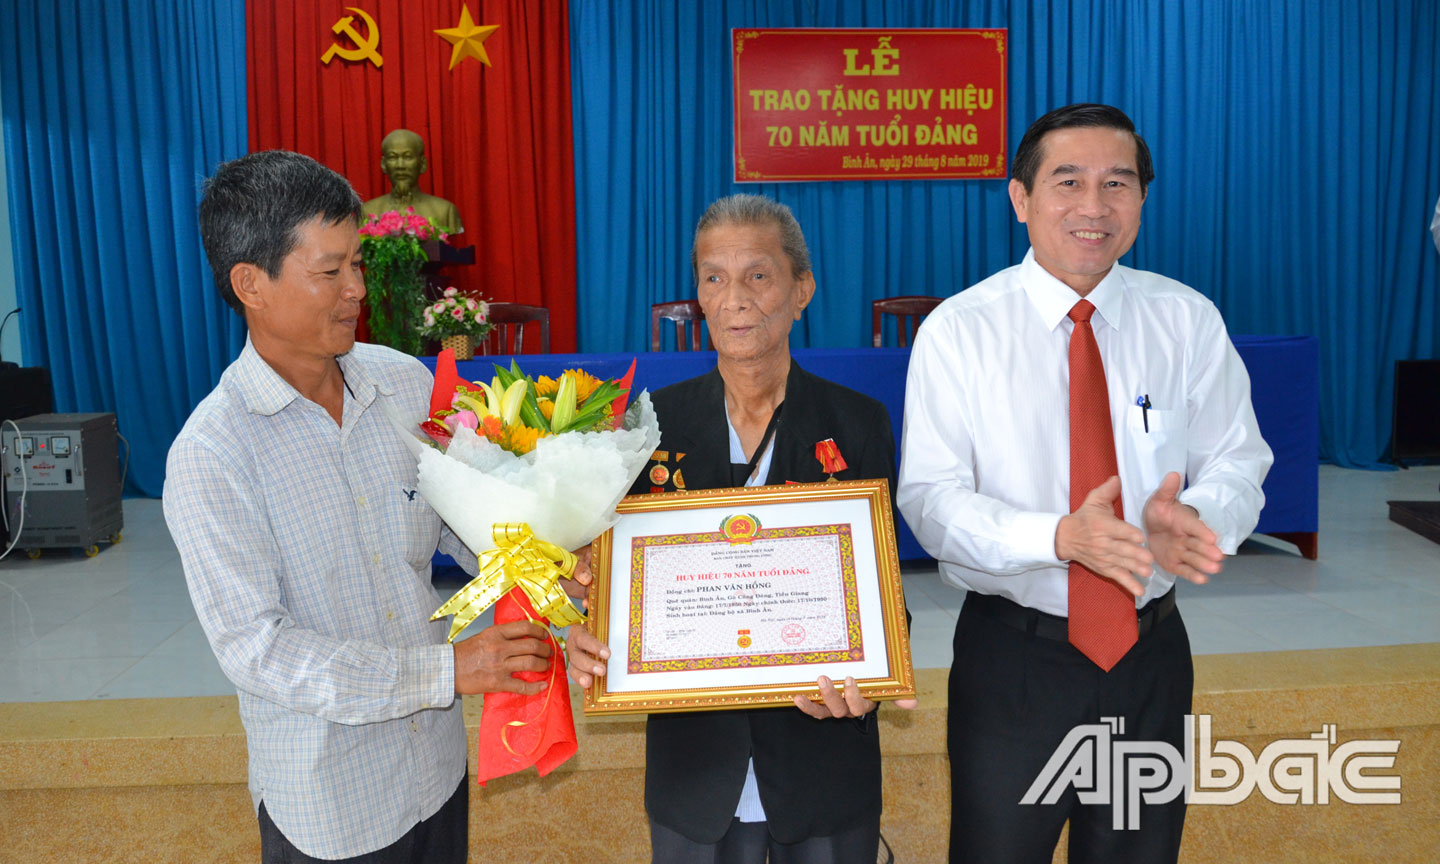 Đồng chí Lê Văn Hưởng trao Huy hiệu 70 năm tuổi Đảng cho đảng viên Phan Văn Hồng.